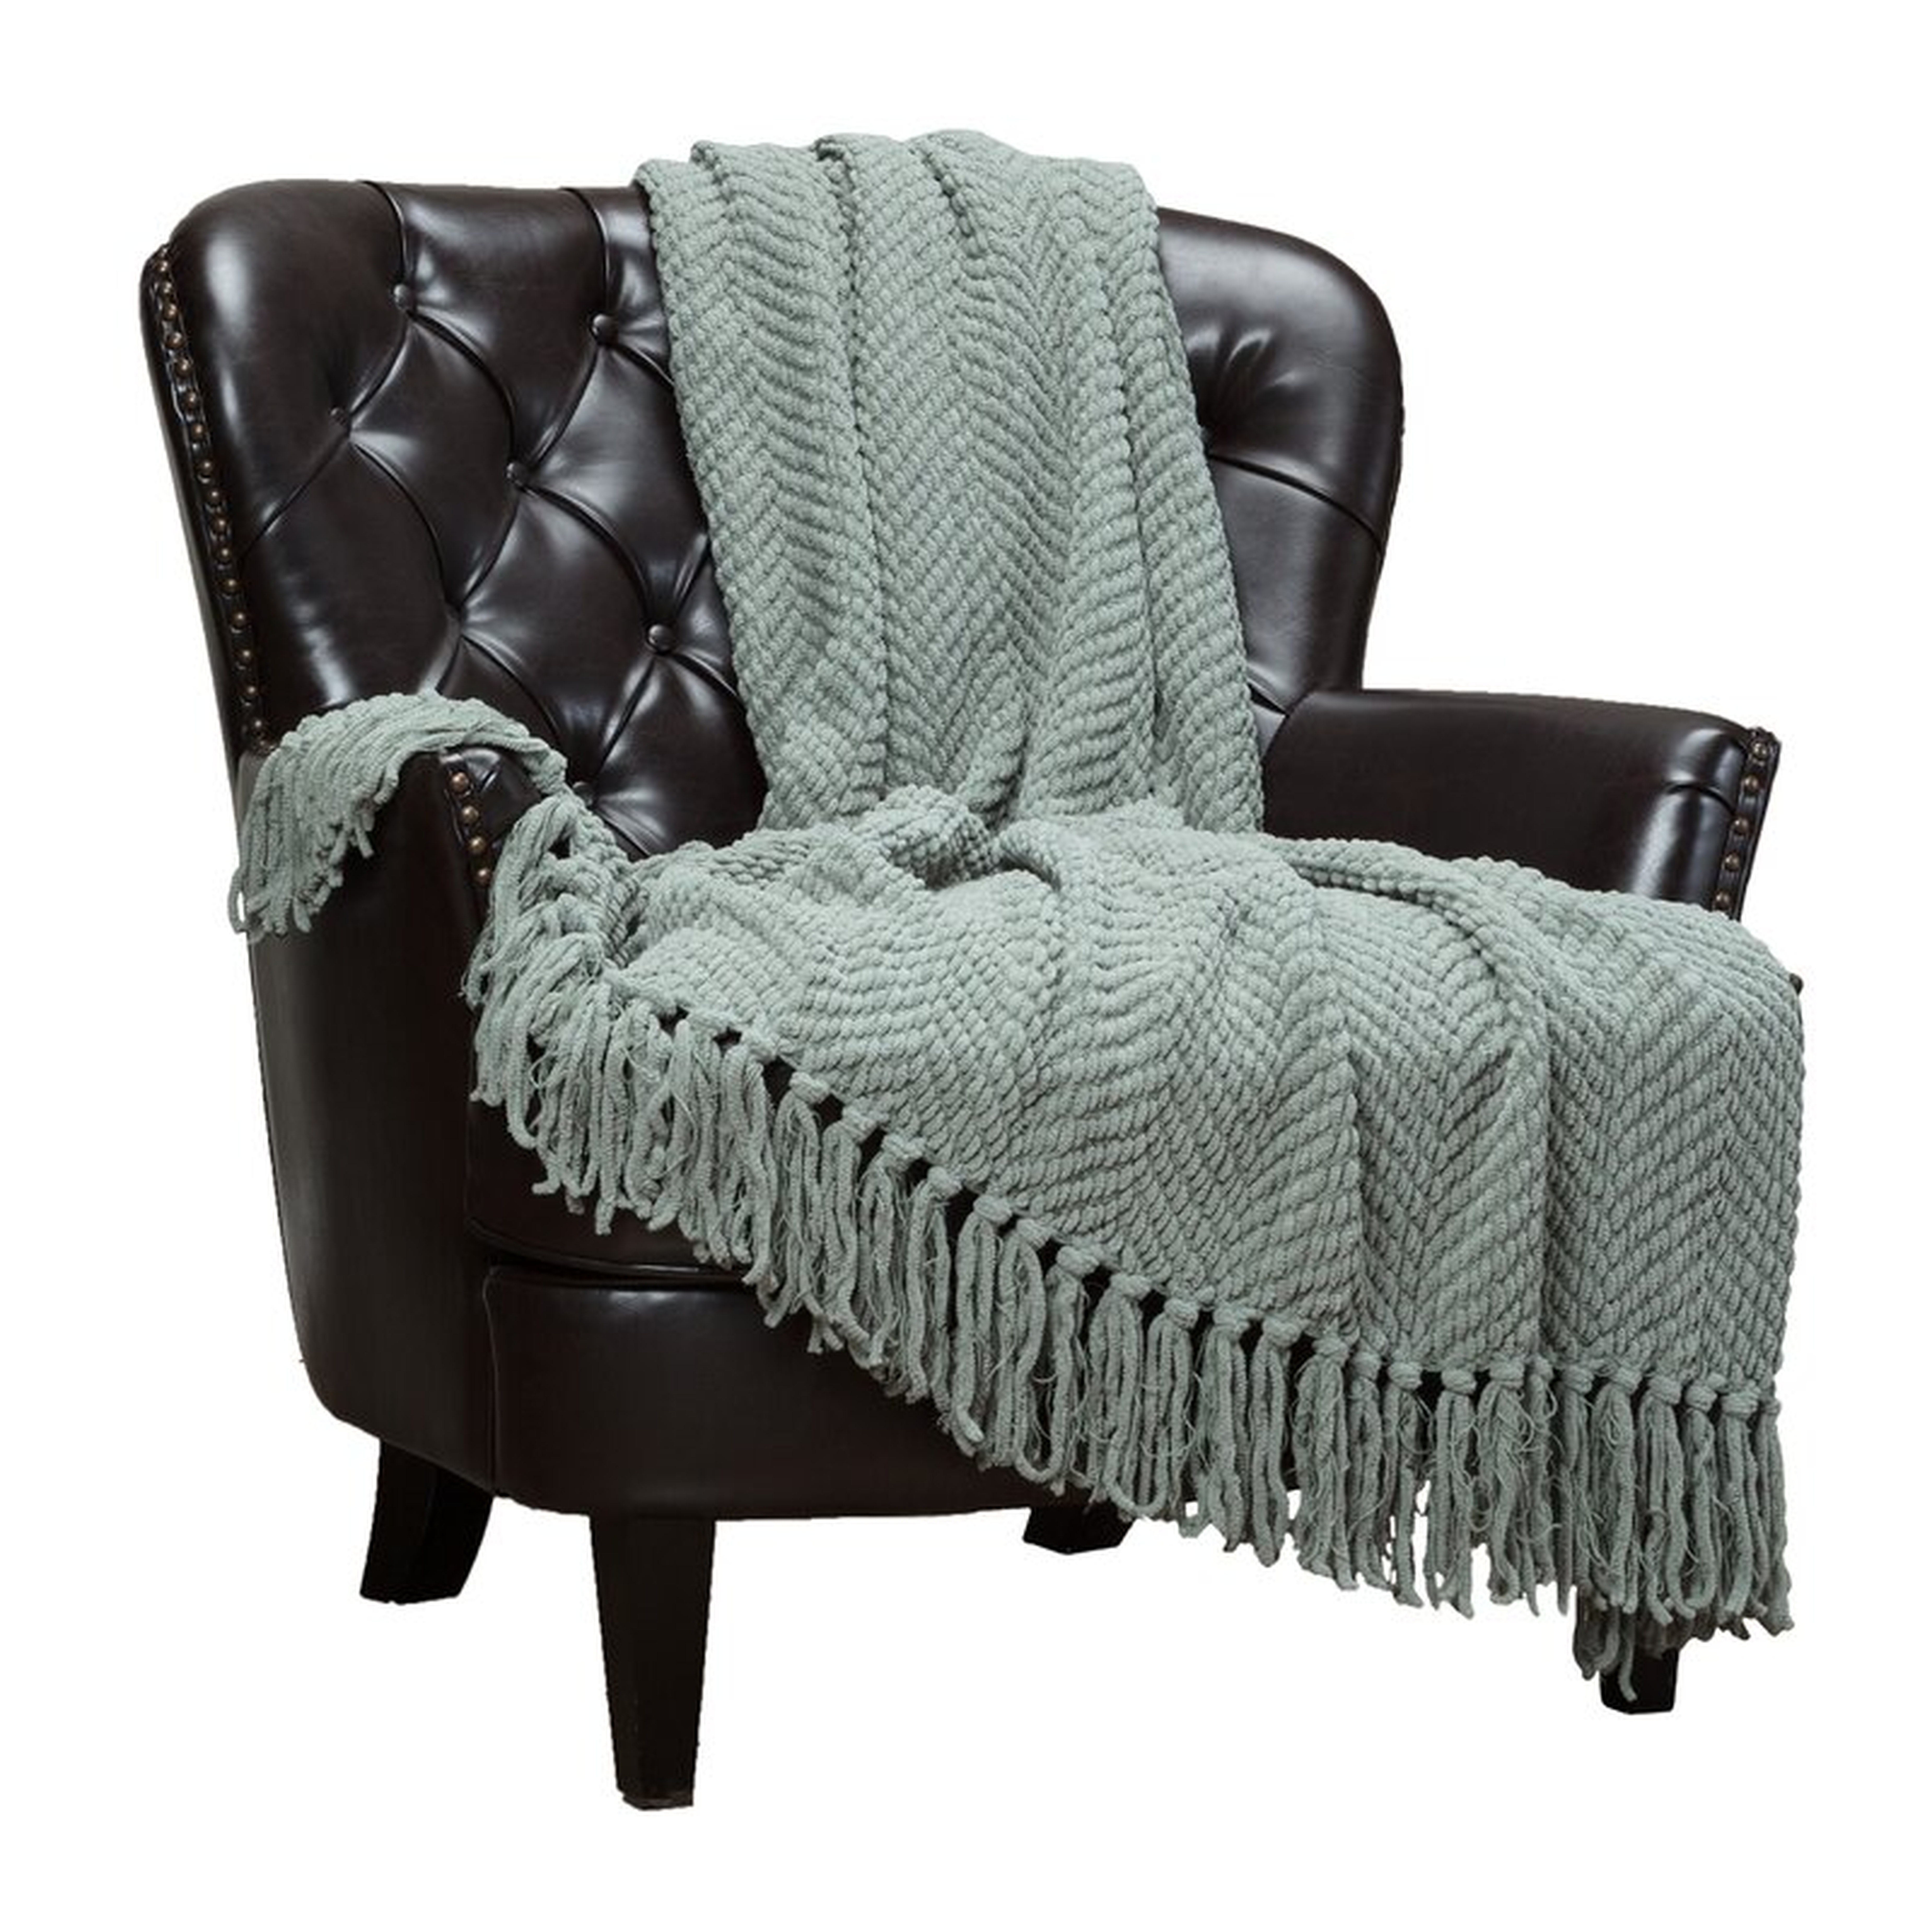 Goufes Textured Knitted Super Soft Blanket - Wayfair